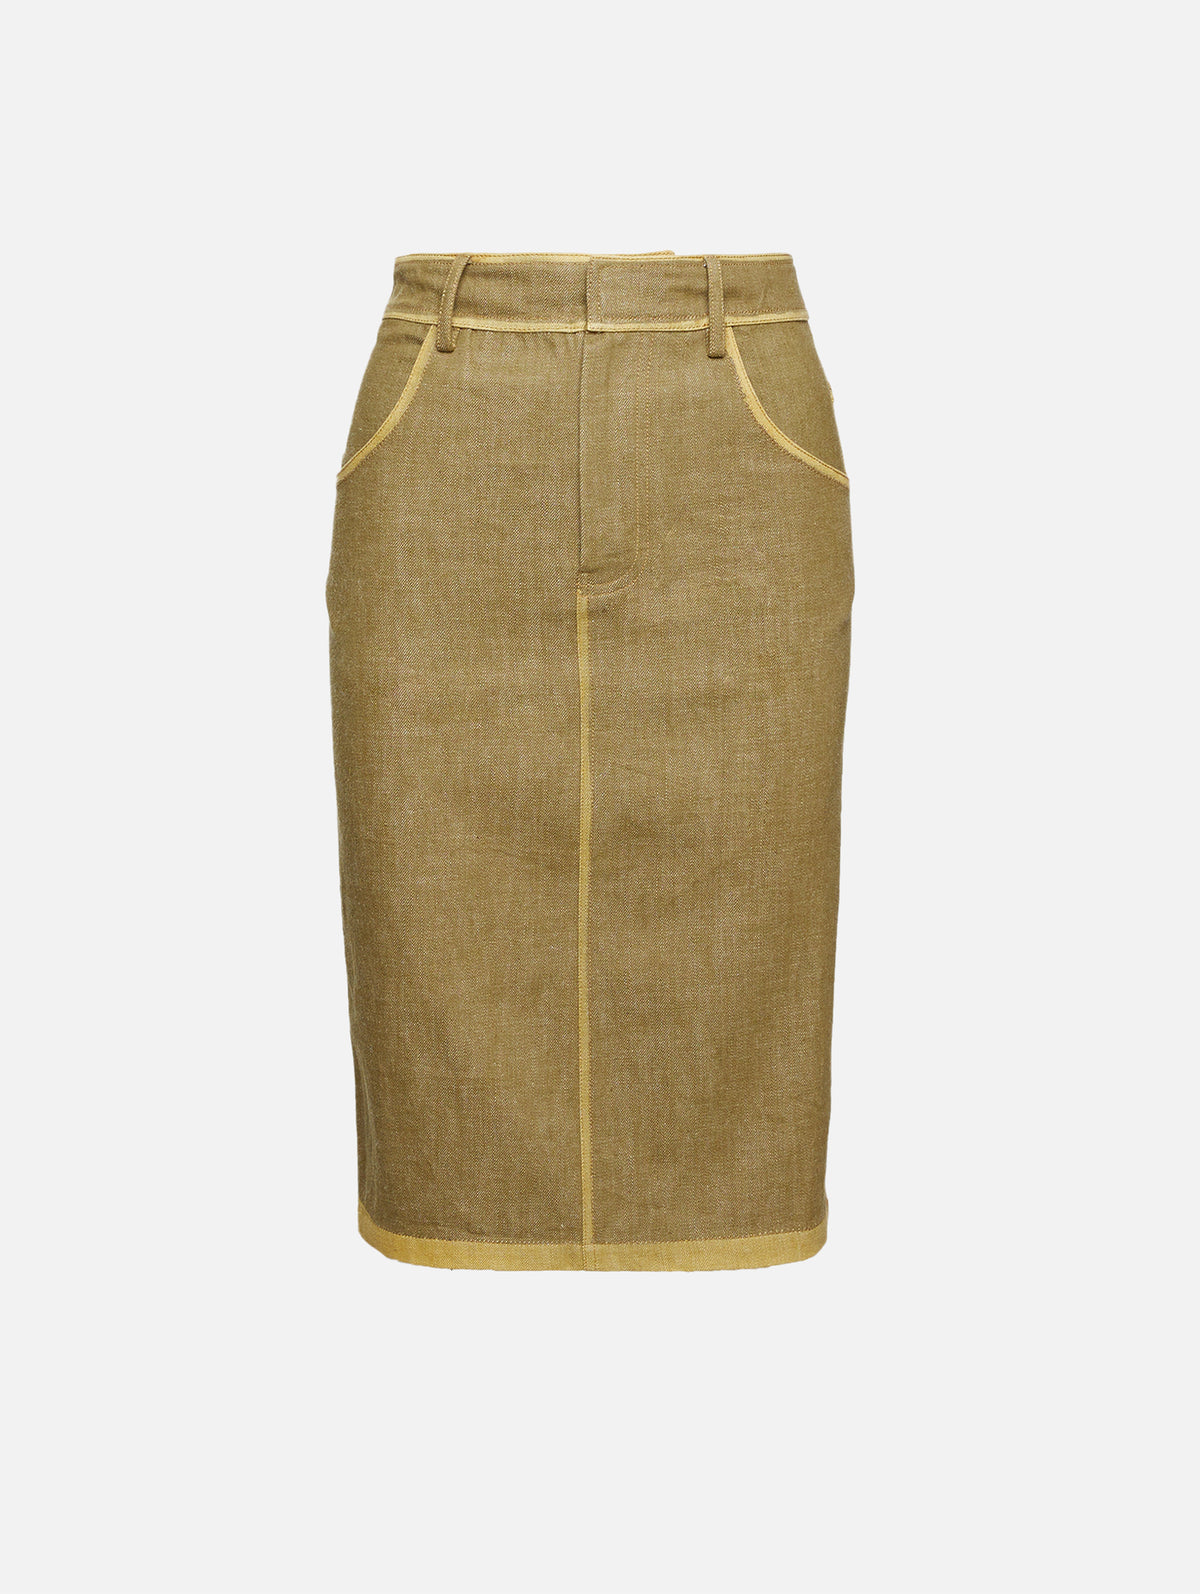 view 1 - Chimaera Deconstructed Denim Skirt